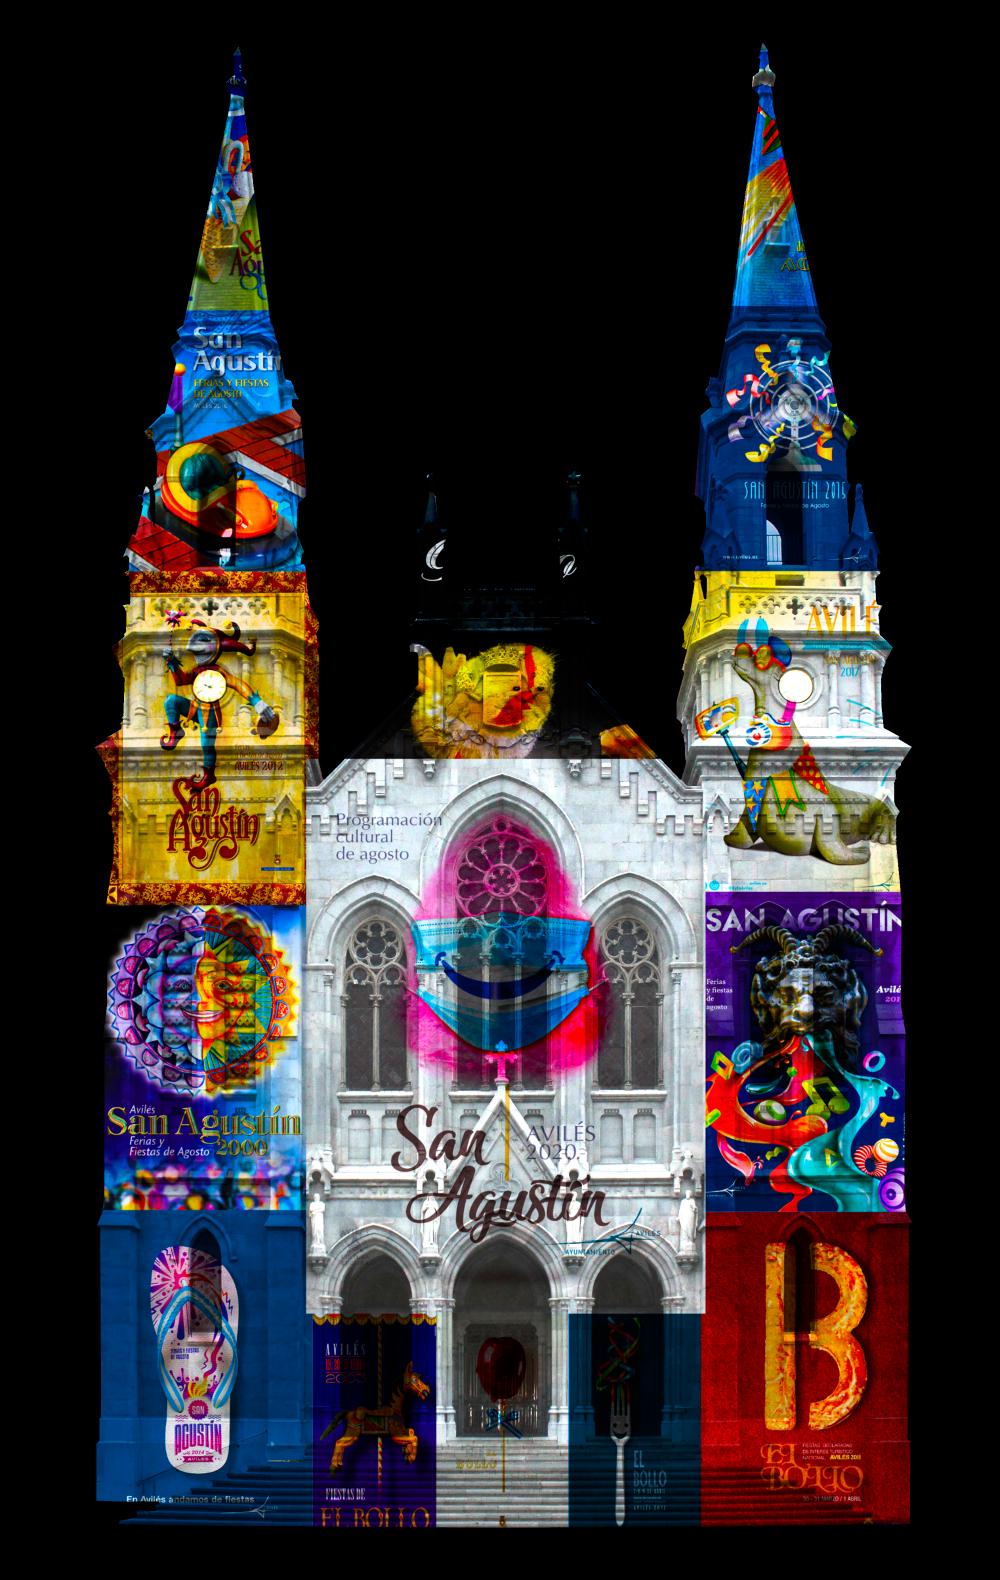 Un espectáculo de luz y sonido sobre la fachada de la Iglesia de Sabugo para despedir la noche de San Agustín